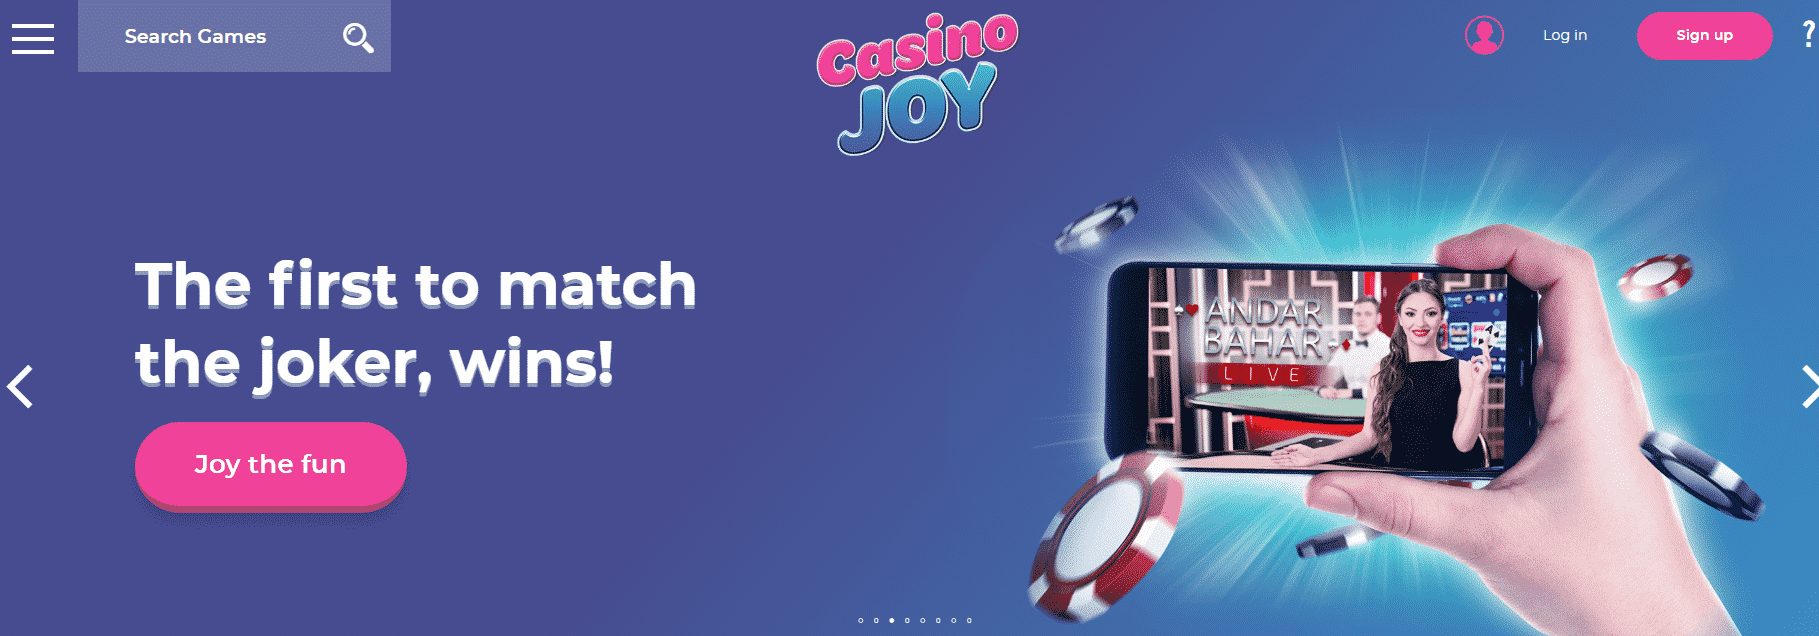 Casino Joy The company website